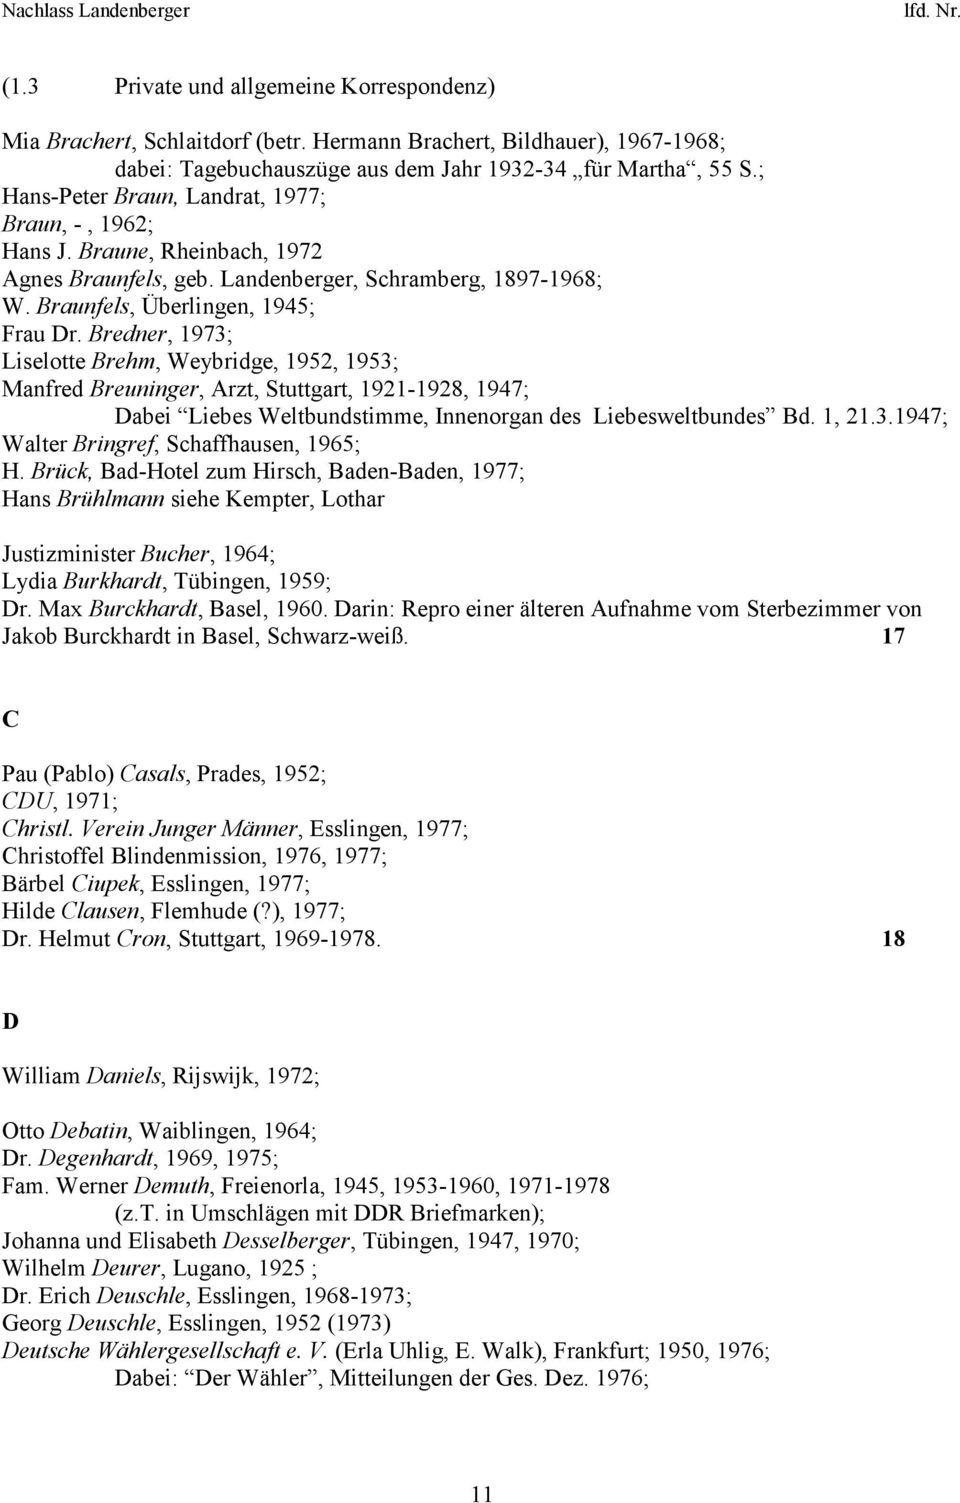 Bredner, 1973; Liselotte Brehm, Weybridge, 1952, 1953; Manfred Breuninger, Arzt, Stuttgart, 1921-1928, 1947; Dabei Liebes Weltbundstimme, Innenorgan des Liebesweltbundes Bd. 1, 21.3.1947; Walter Bringref, Schaffhausen, 1965; H.